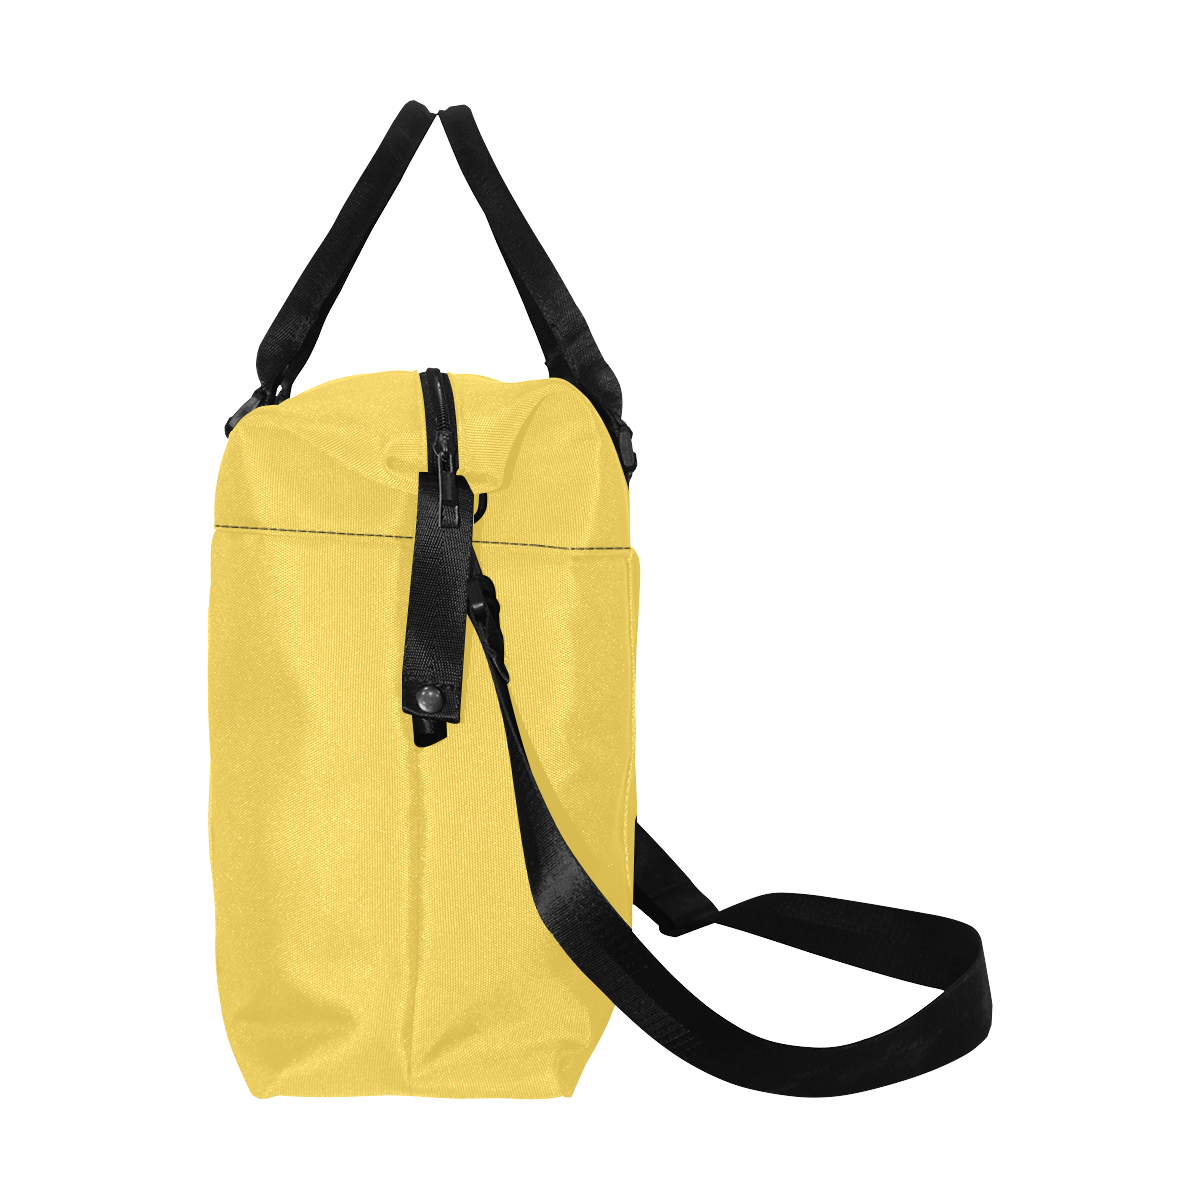 color mustard Large Capacity Duffle Bag (Model 1715)